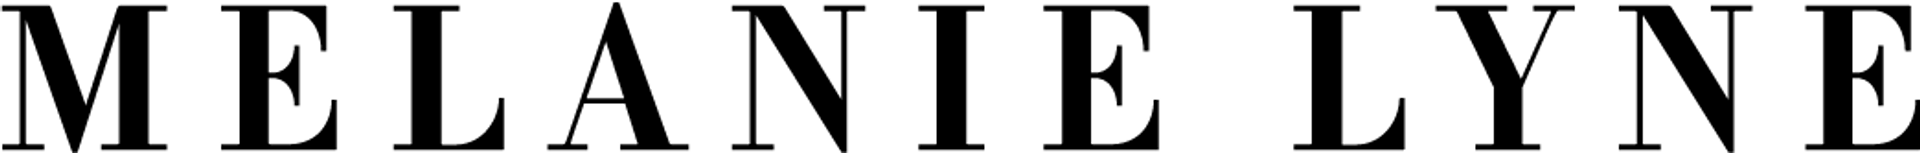 MELANIE LYNE logo de circulaires